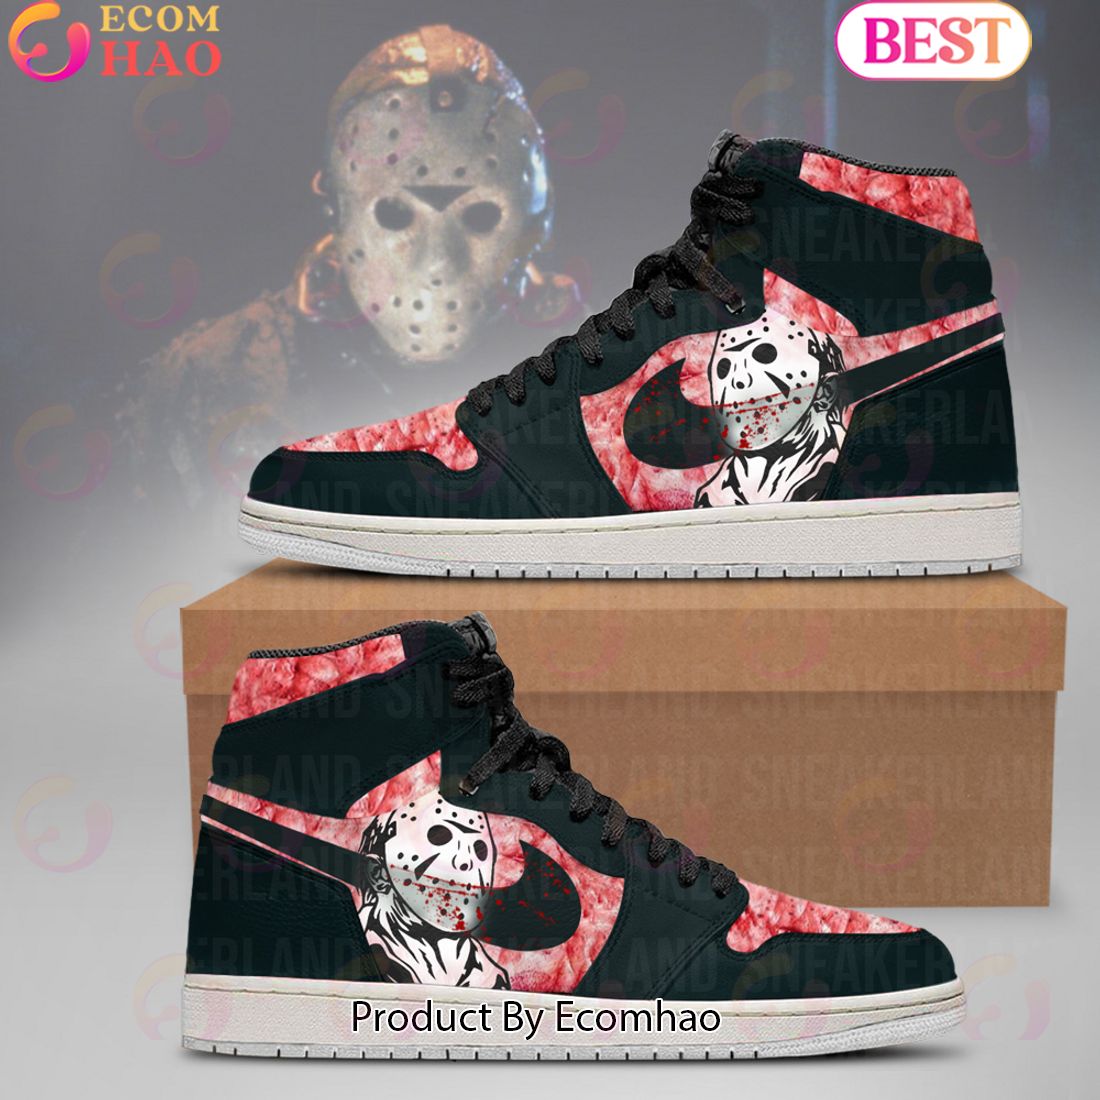 Personalized Jason Voorhees Halloween Air Jordan 13 Shoes